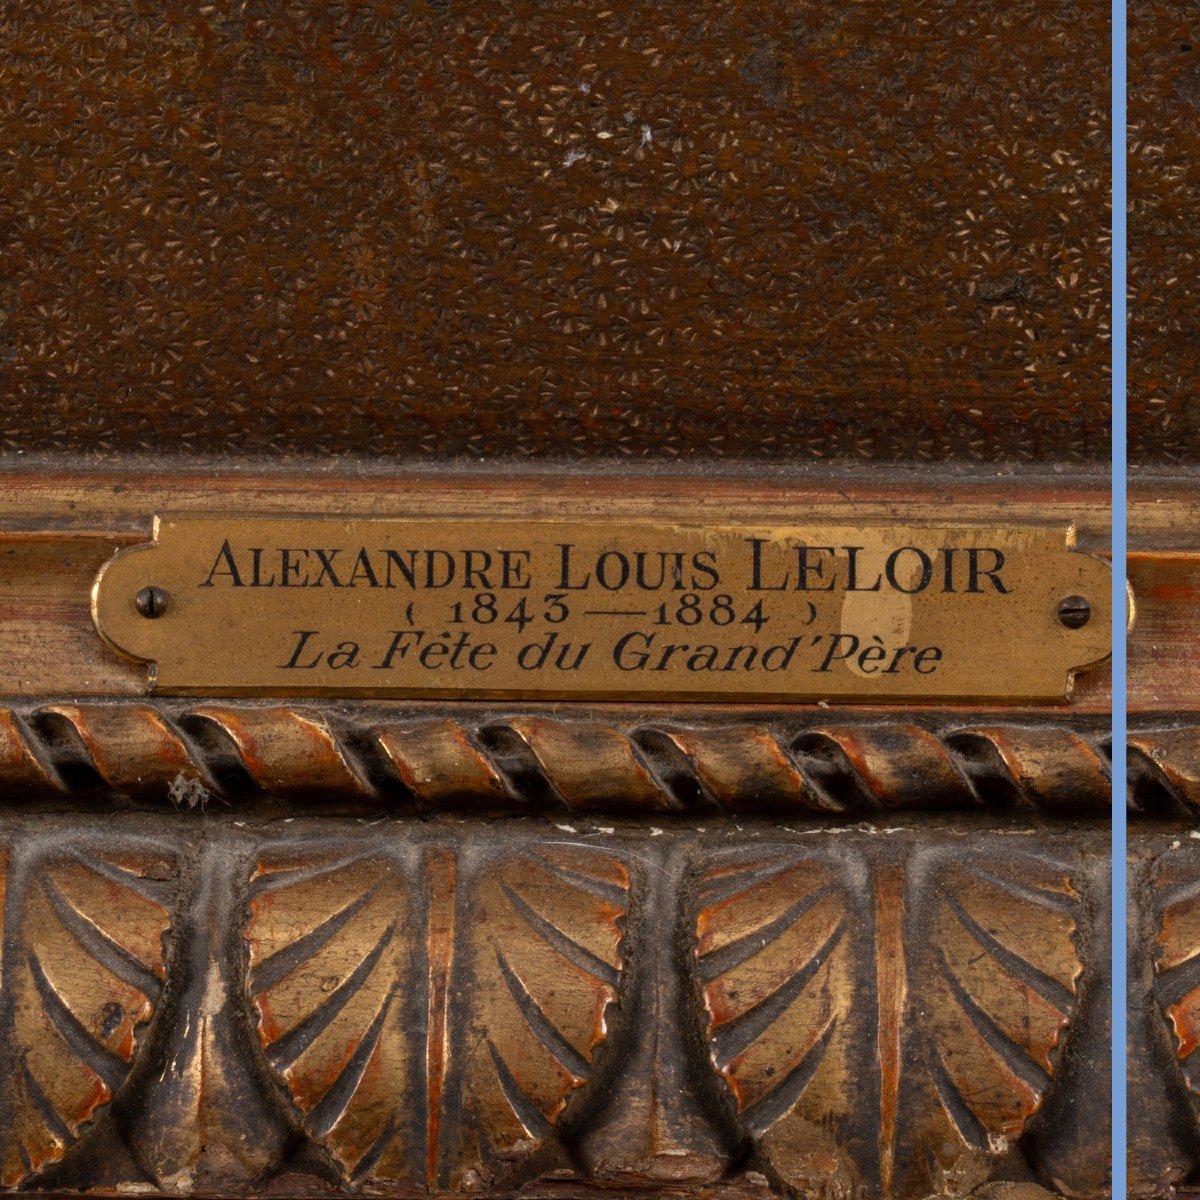 Proantic: Louis Alexandre Leloir (1843-1884), La fête du grand père,